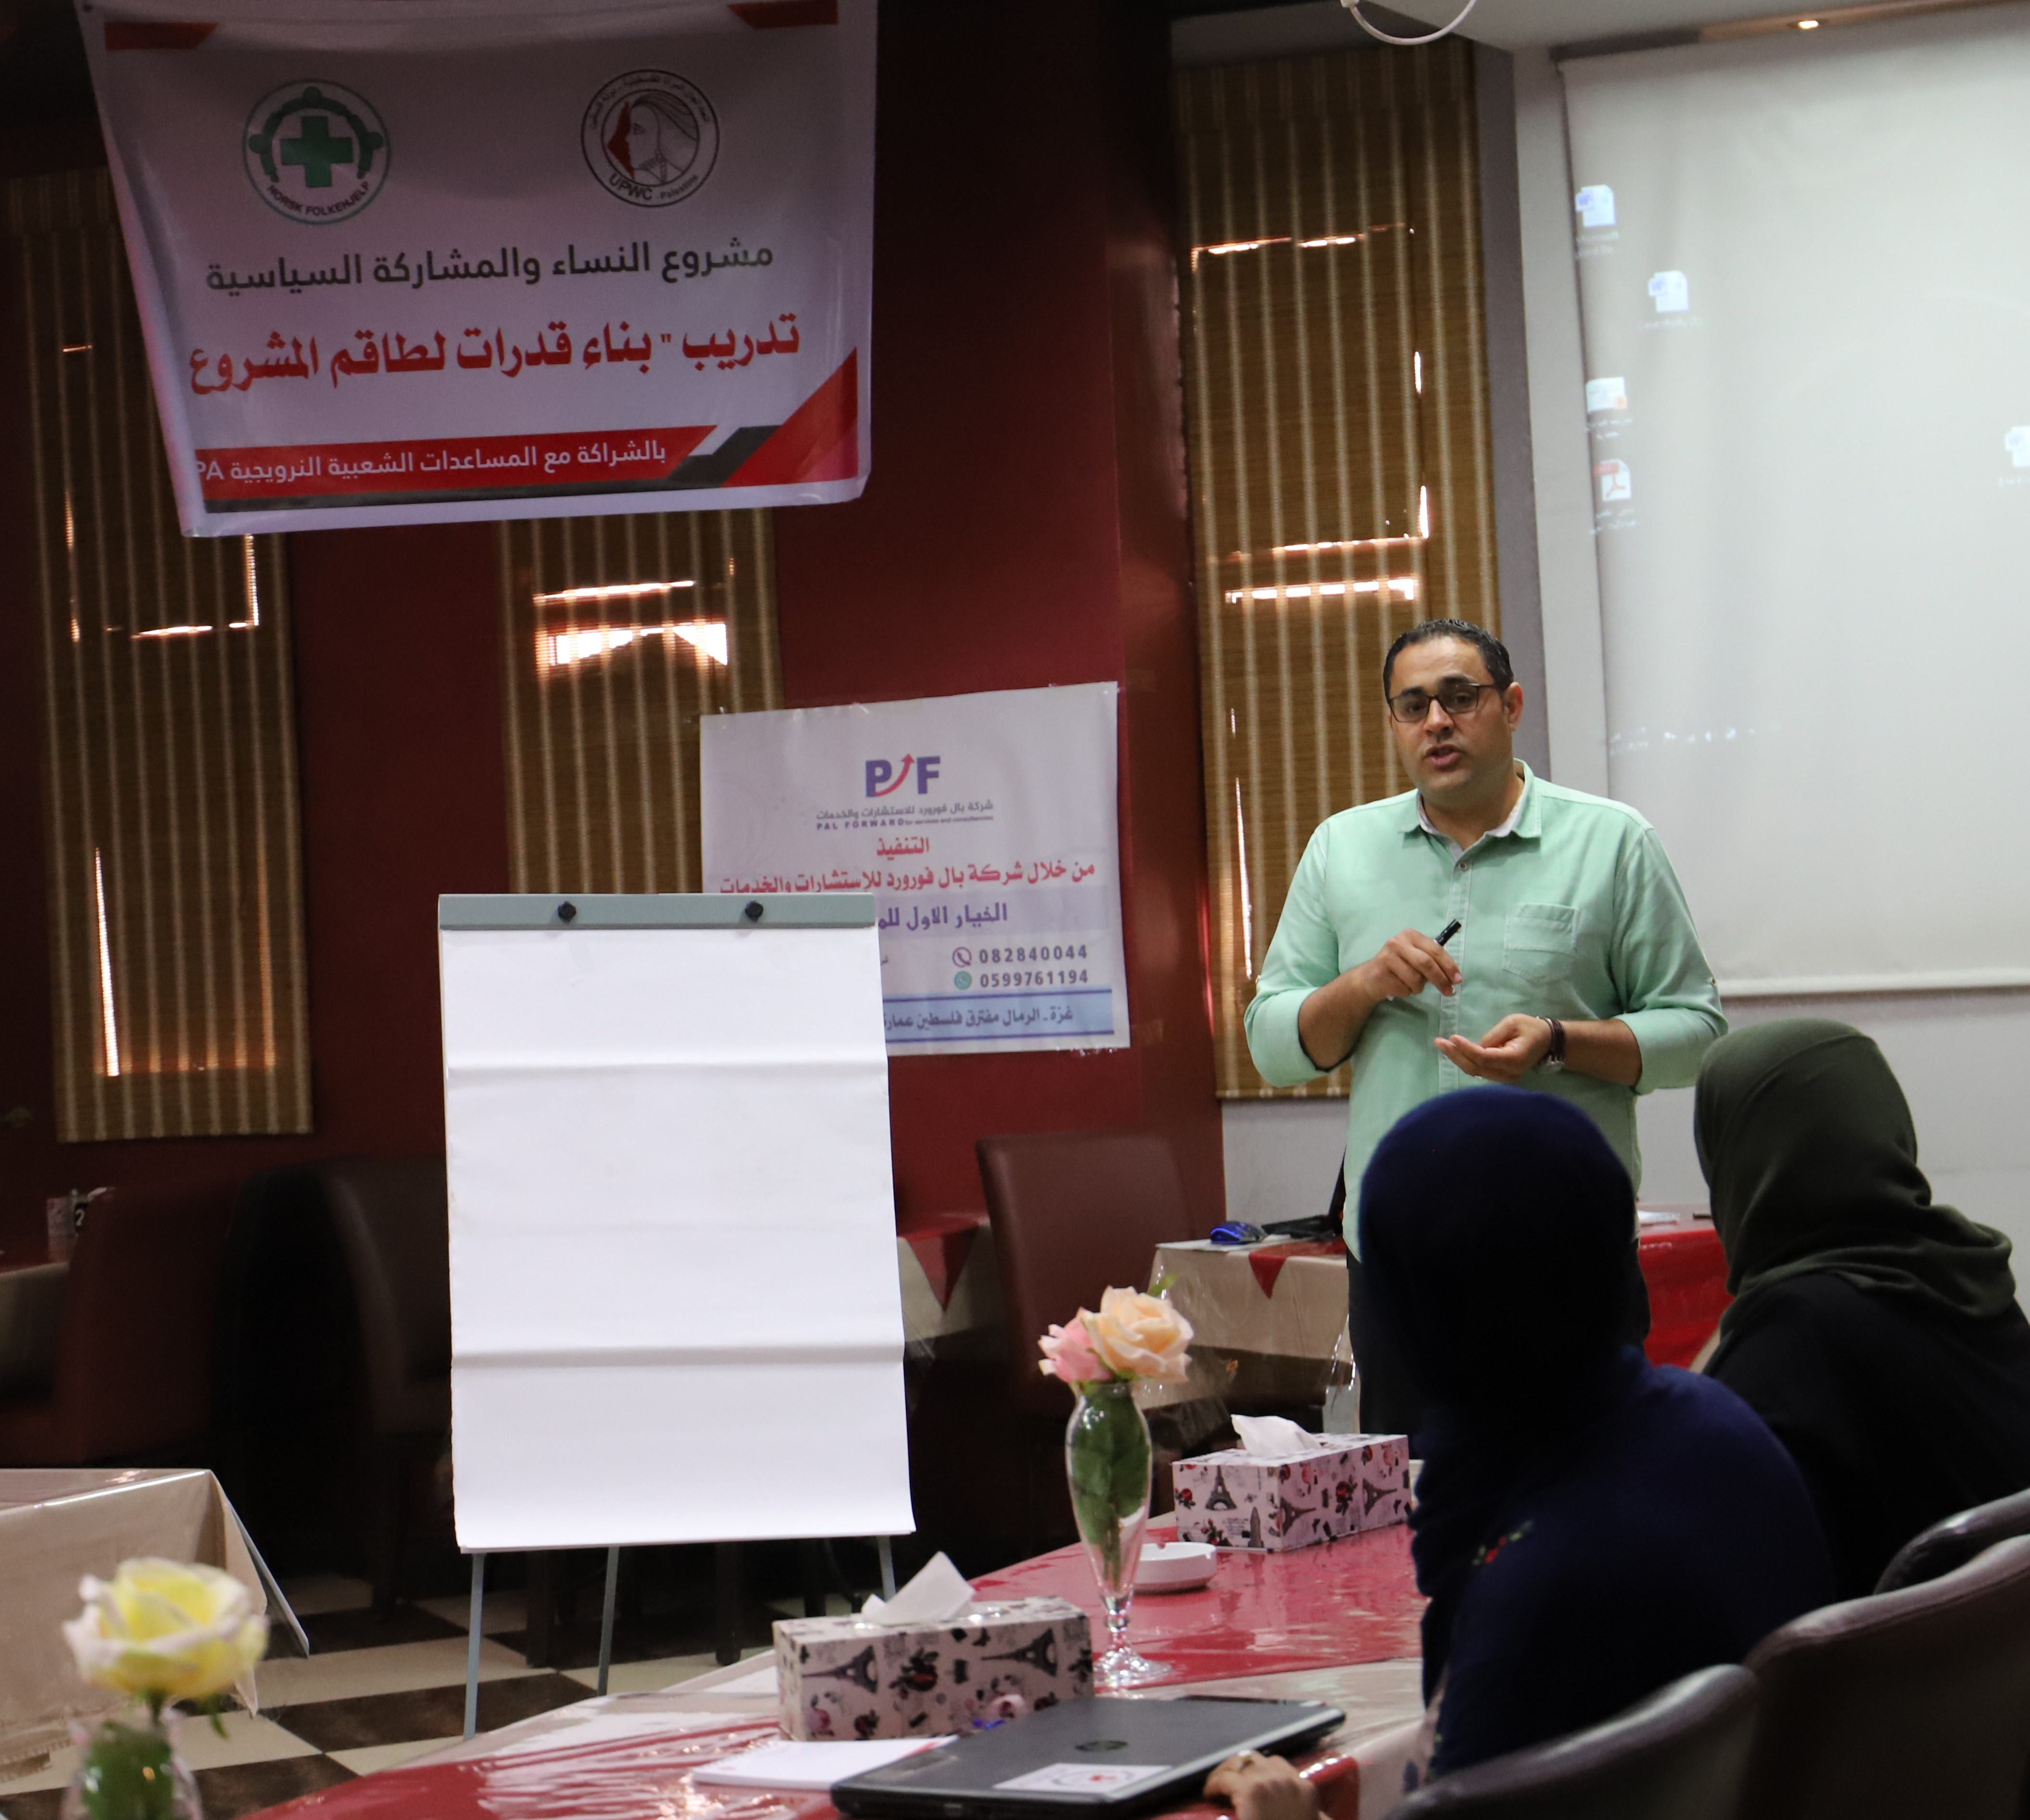 اتحاد لجان المرأة الفلسطينية ينفذ تدريبا بعنوان “بناء قدرات لطاقم المشروع”